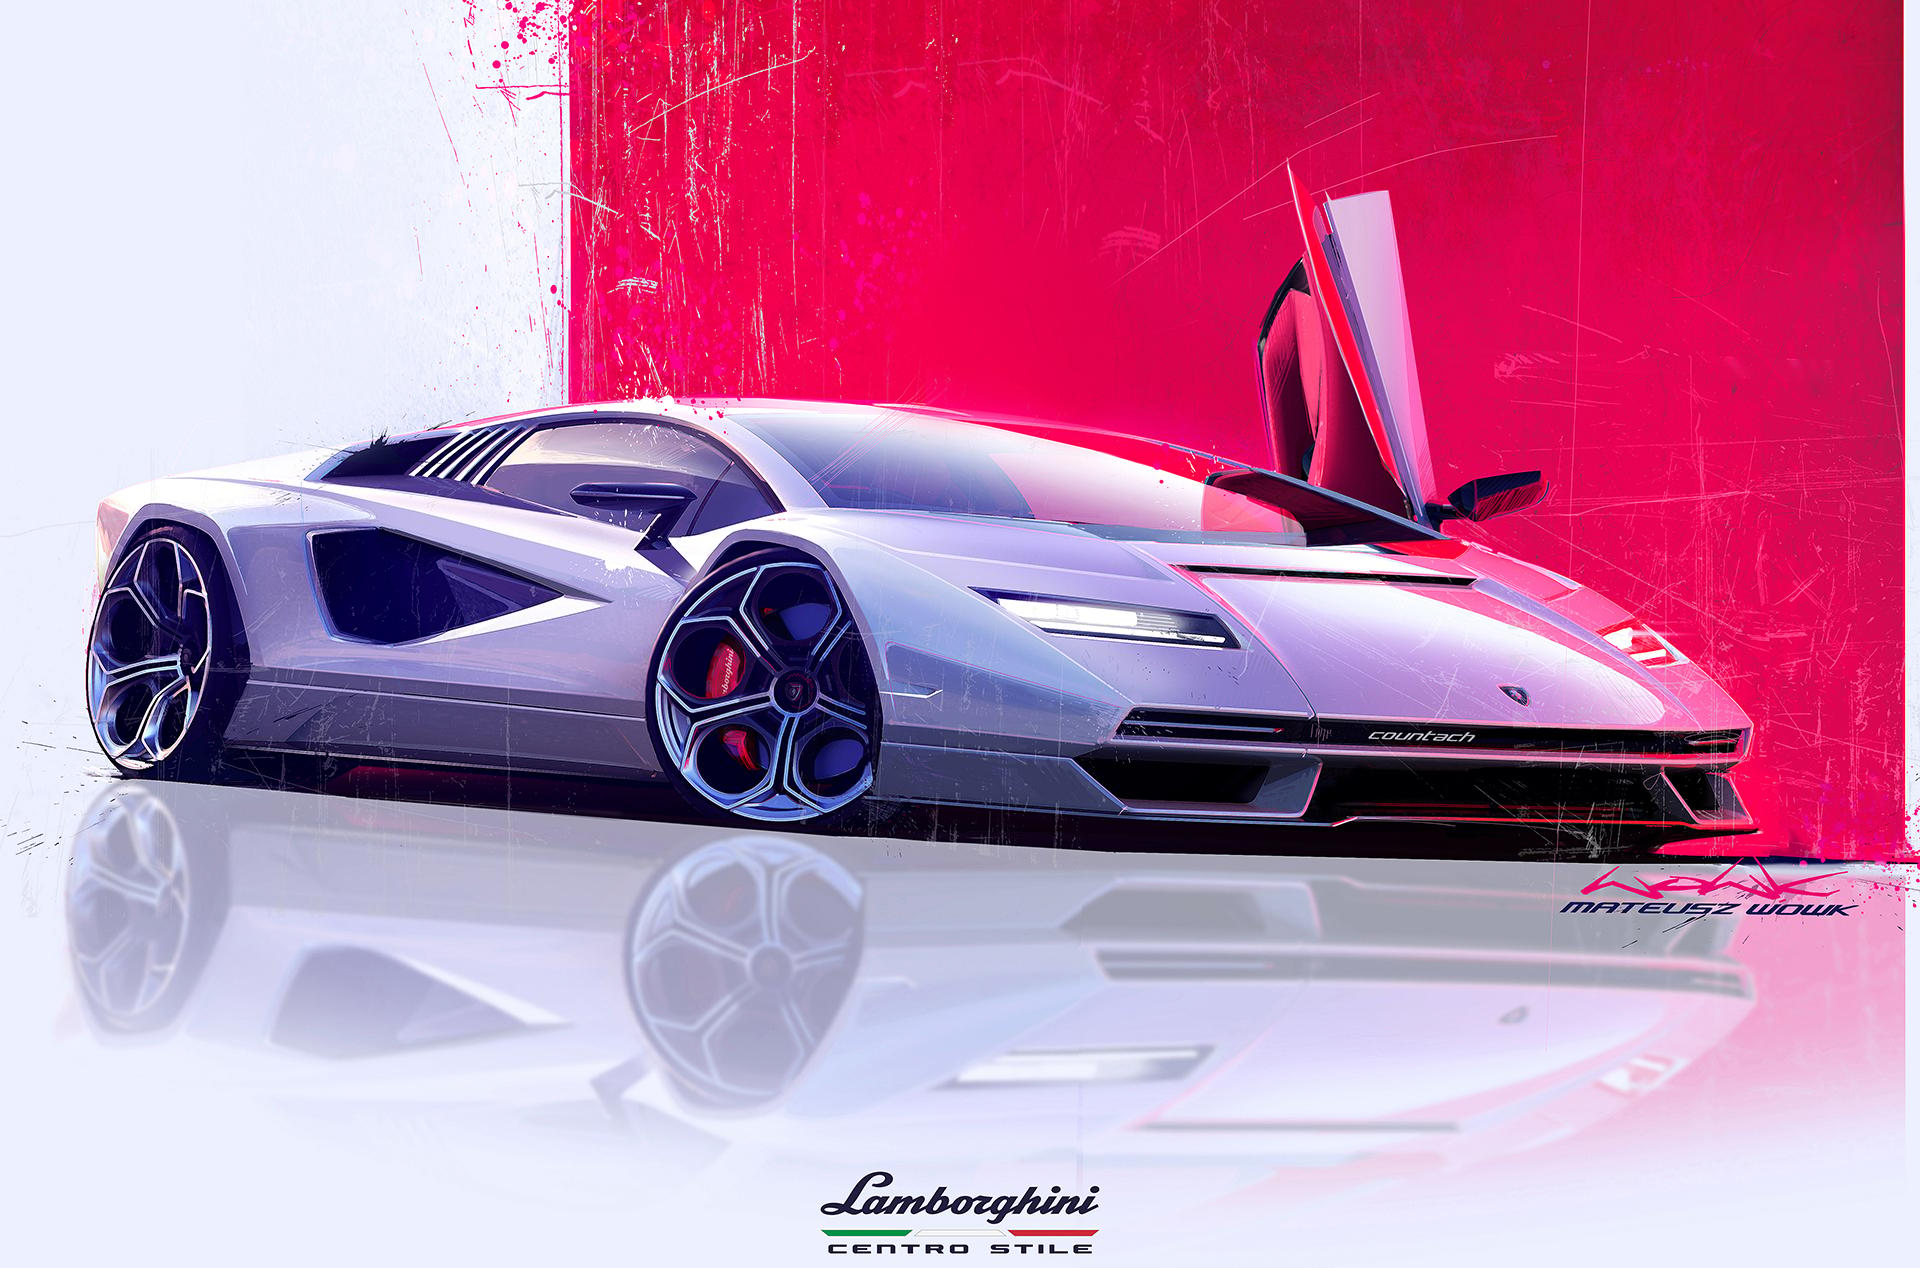 Design art of the new Lamborghini Countach